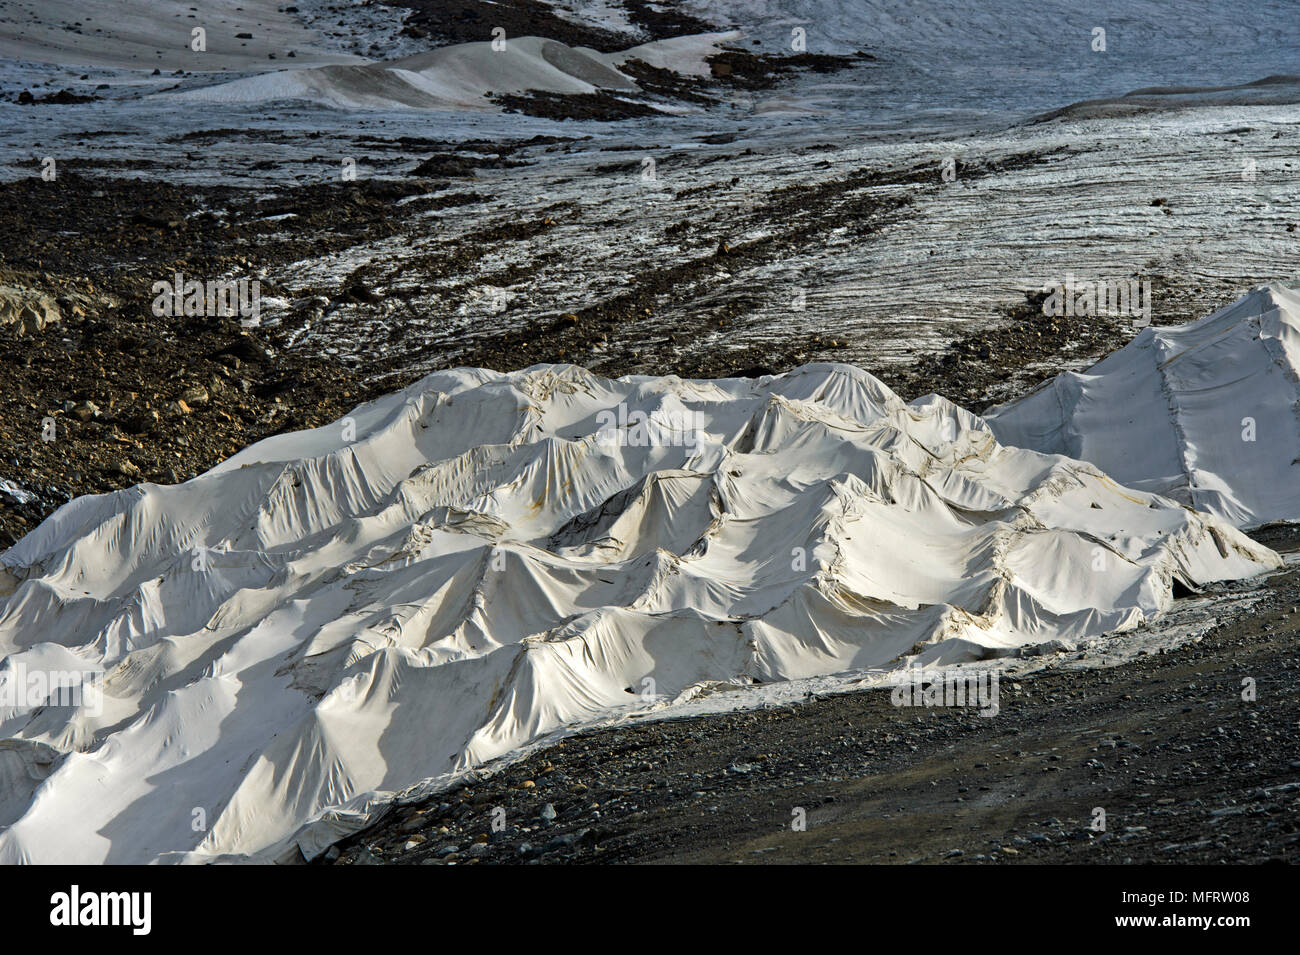 La copertura di ghiaccio del ghiacciaio bianco con vello in plastica per ridurre il ritiro del ghiacciaio in estate, zona sciistica Kaunertal Glacier Foto Stock